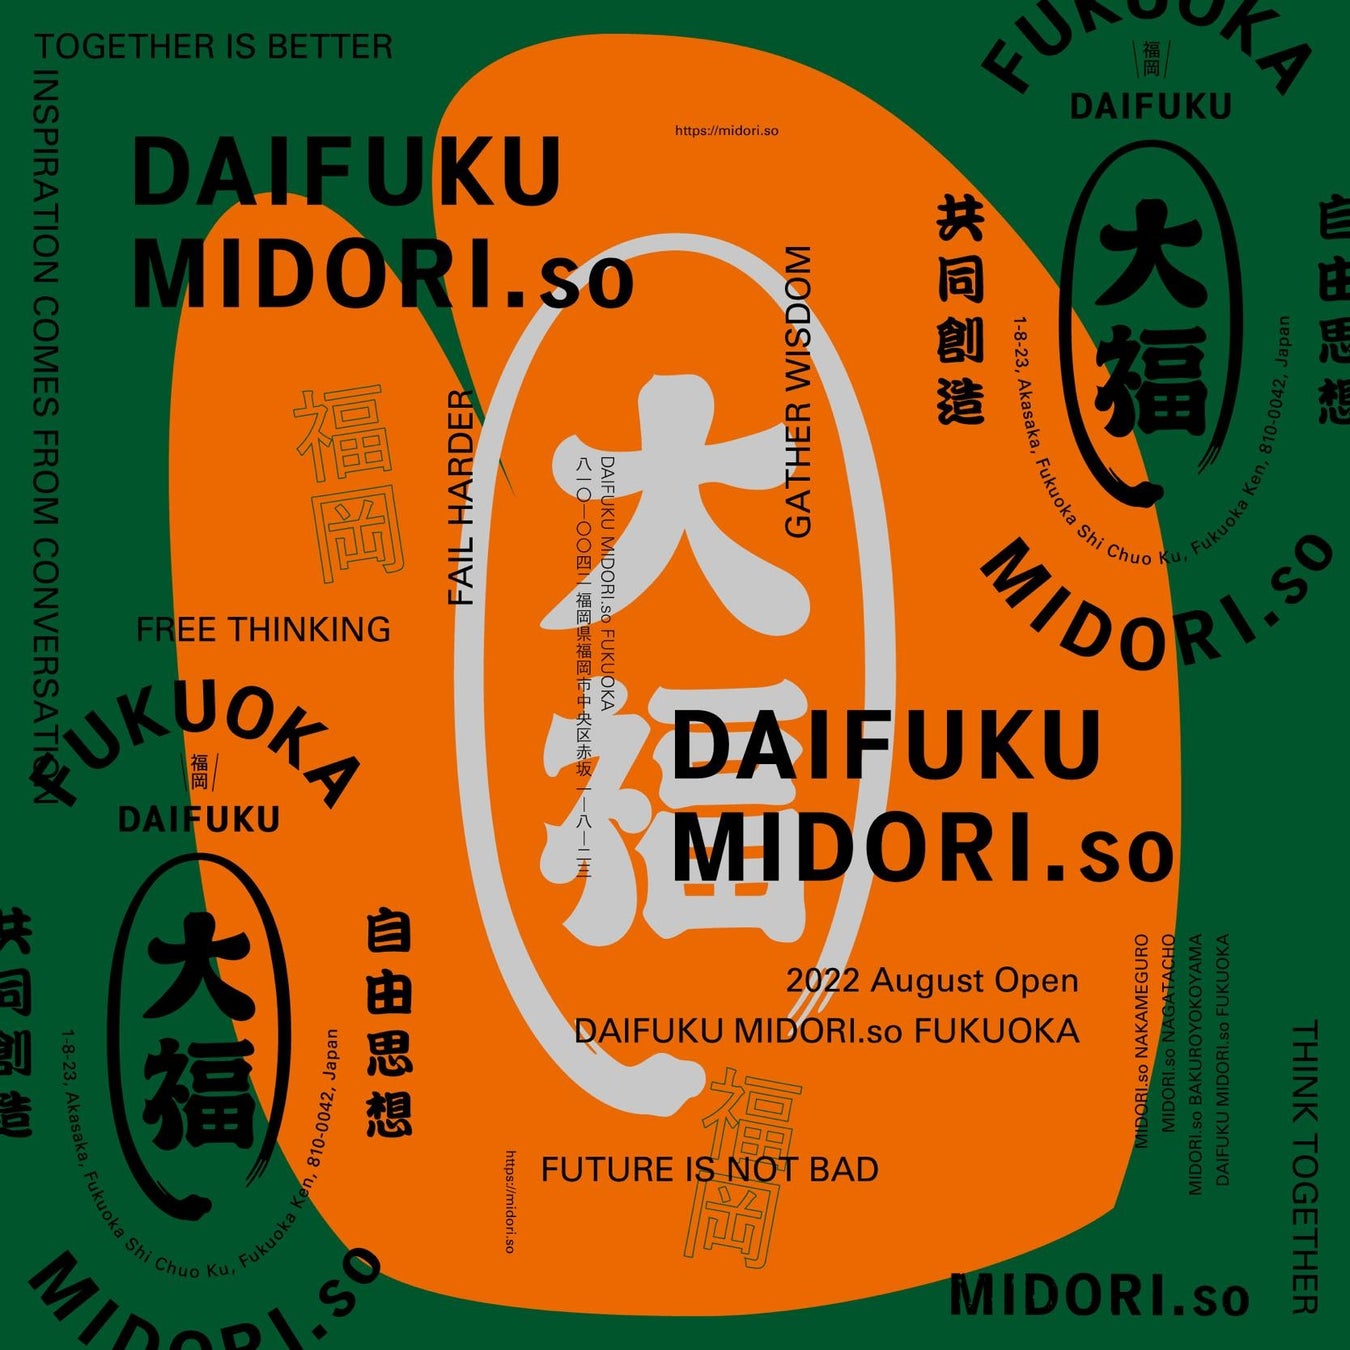 MIDORI. so初の九州拠点、ビル一棟をリノベーションした複合型シェアオフィス『DAIFUKU MIDORI so.』が、2022年9月中旬福岡県福岡市にオープンのサブ画像1